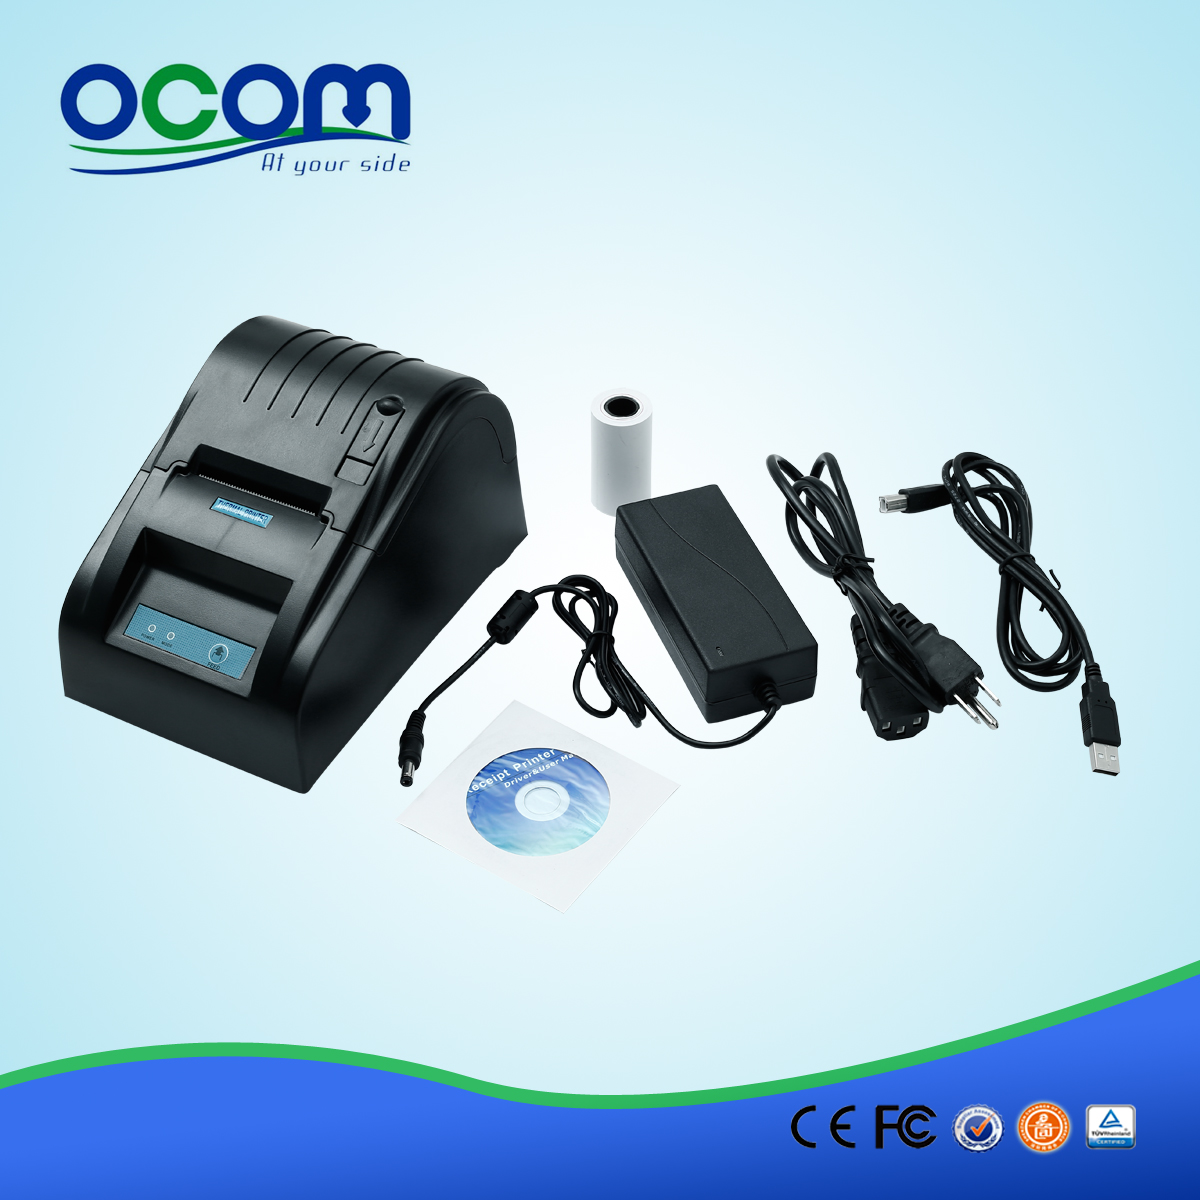 OCPP-585 رخيصة الطابعة الحرارية 58mm ومصنع الأسعار